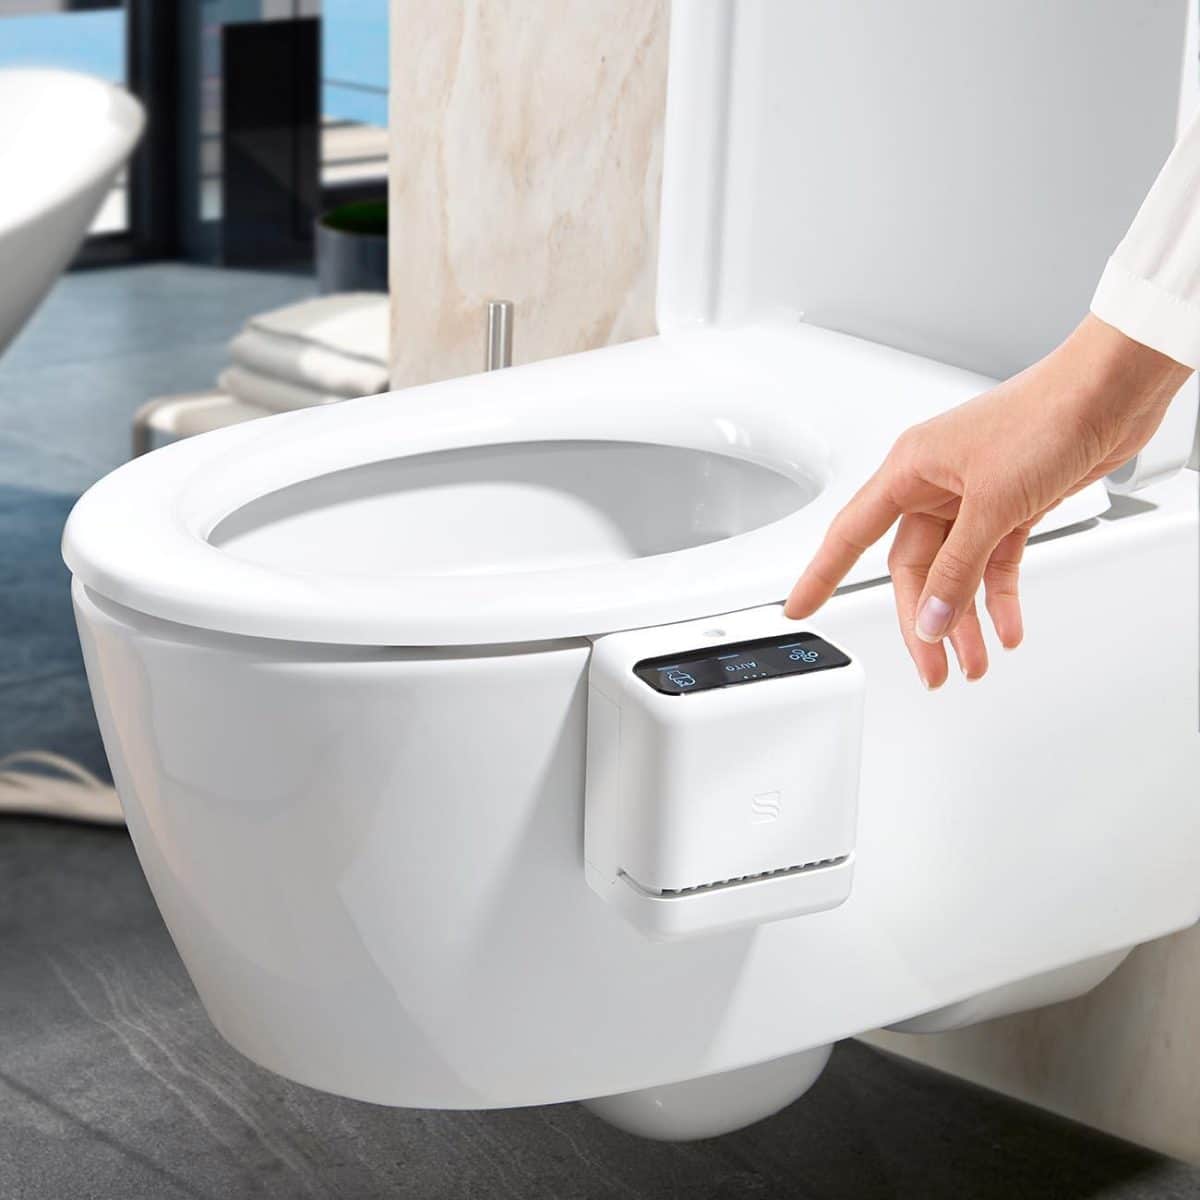 Le coussin d'air toilette une innovation pour plus de confort et d'hygiène 